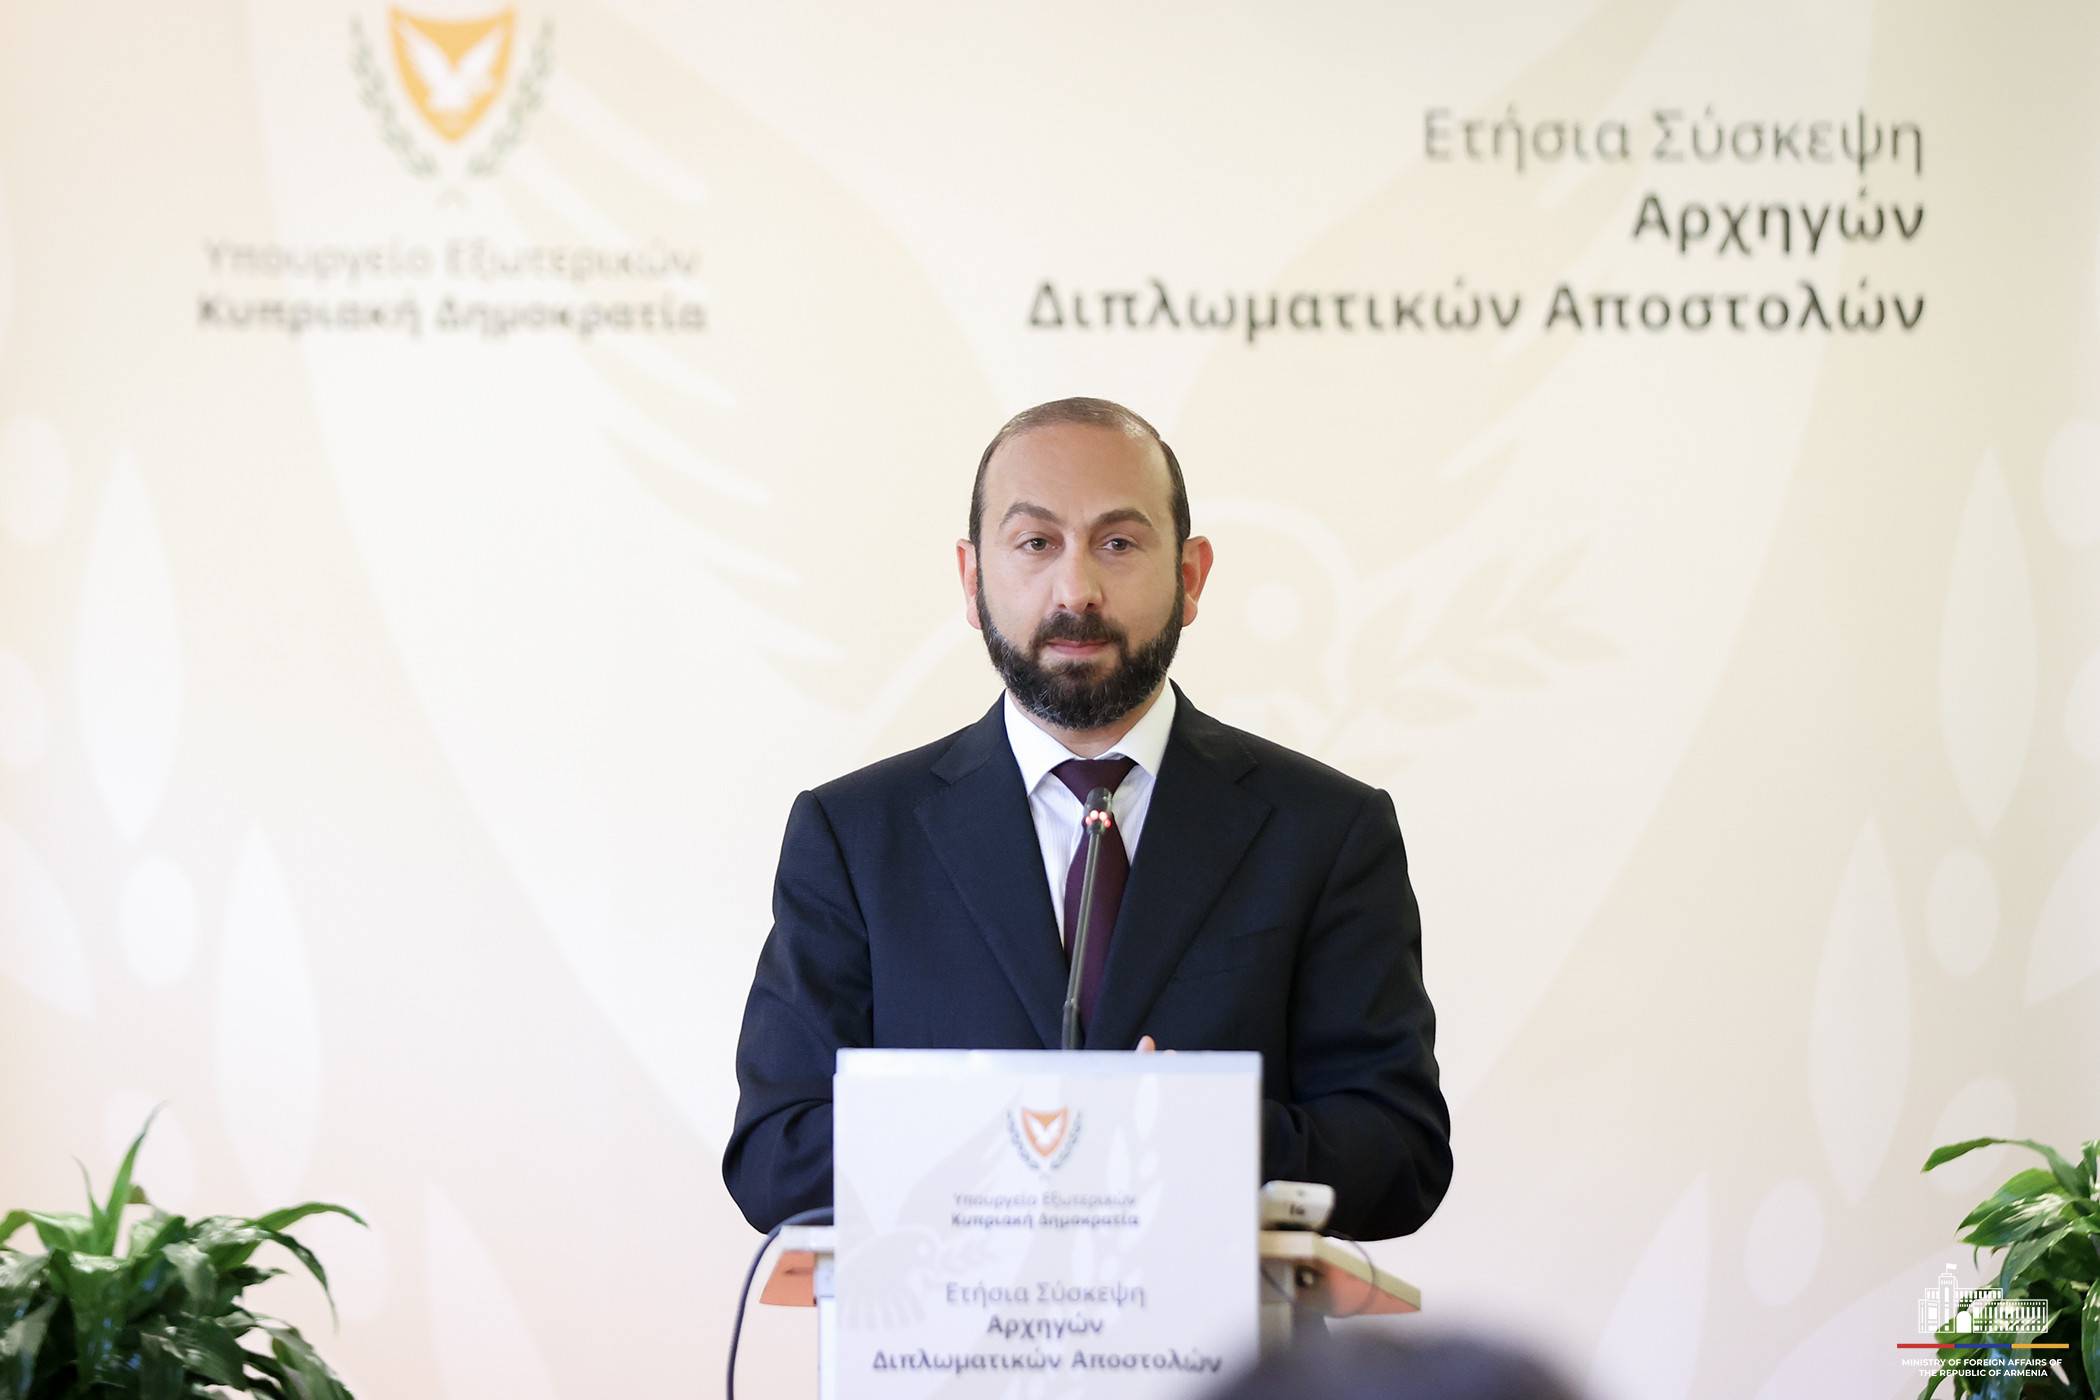 Армения планирует открыть постоянное дипломатическое представительство на Кипре - МИД 